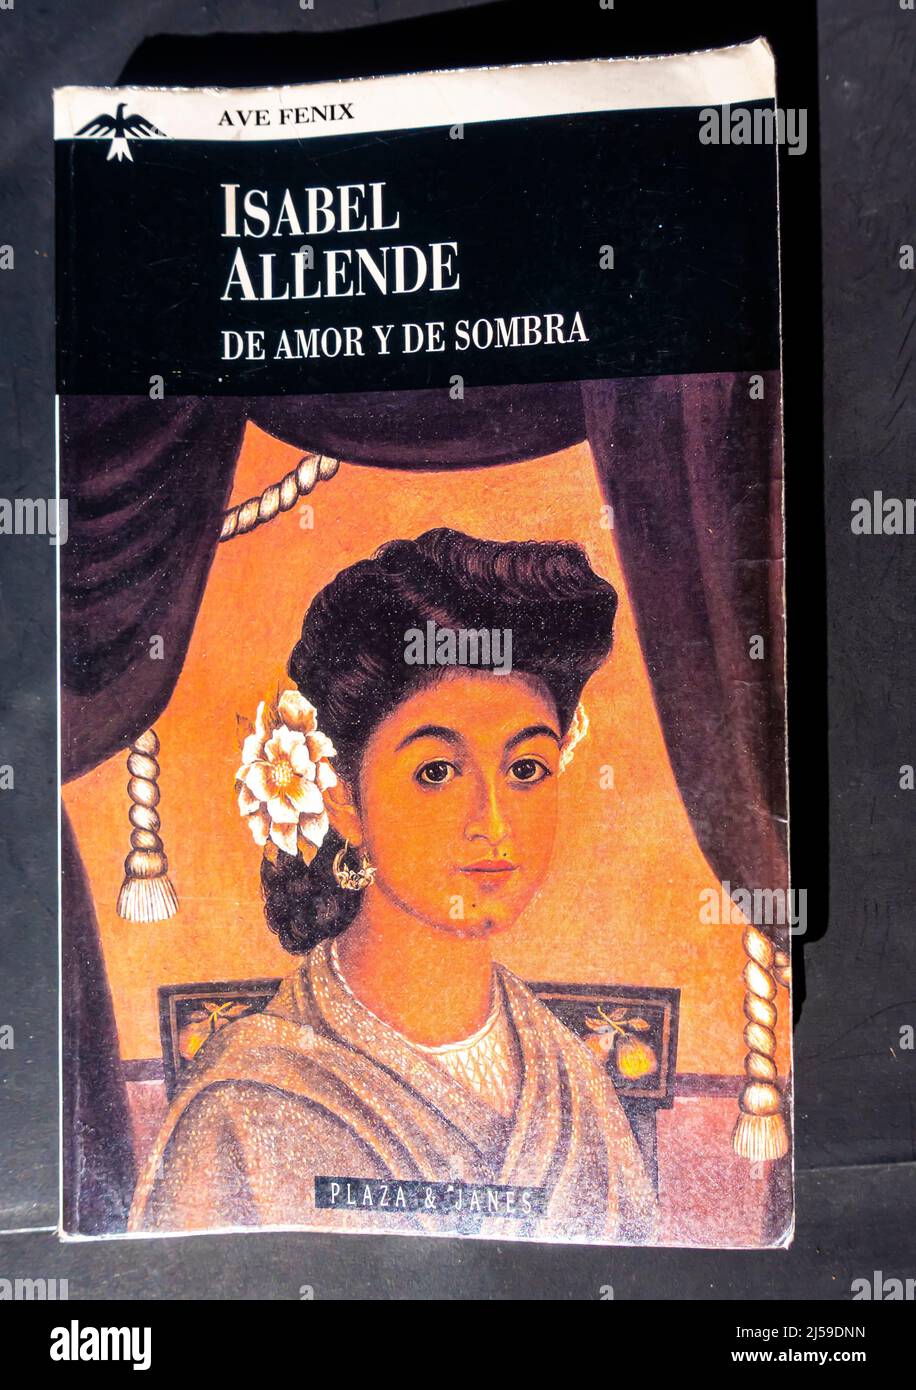 Isabel Allende - De Amor y de Sombra novel - paperback. Aliende Of Love and Shadows. 1984 Stock Photo